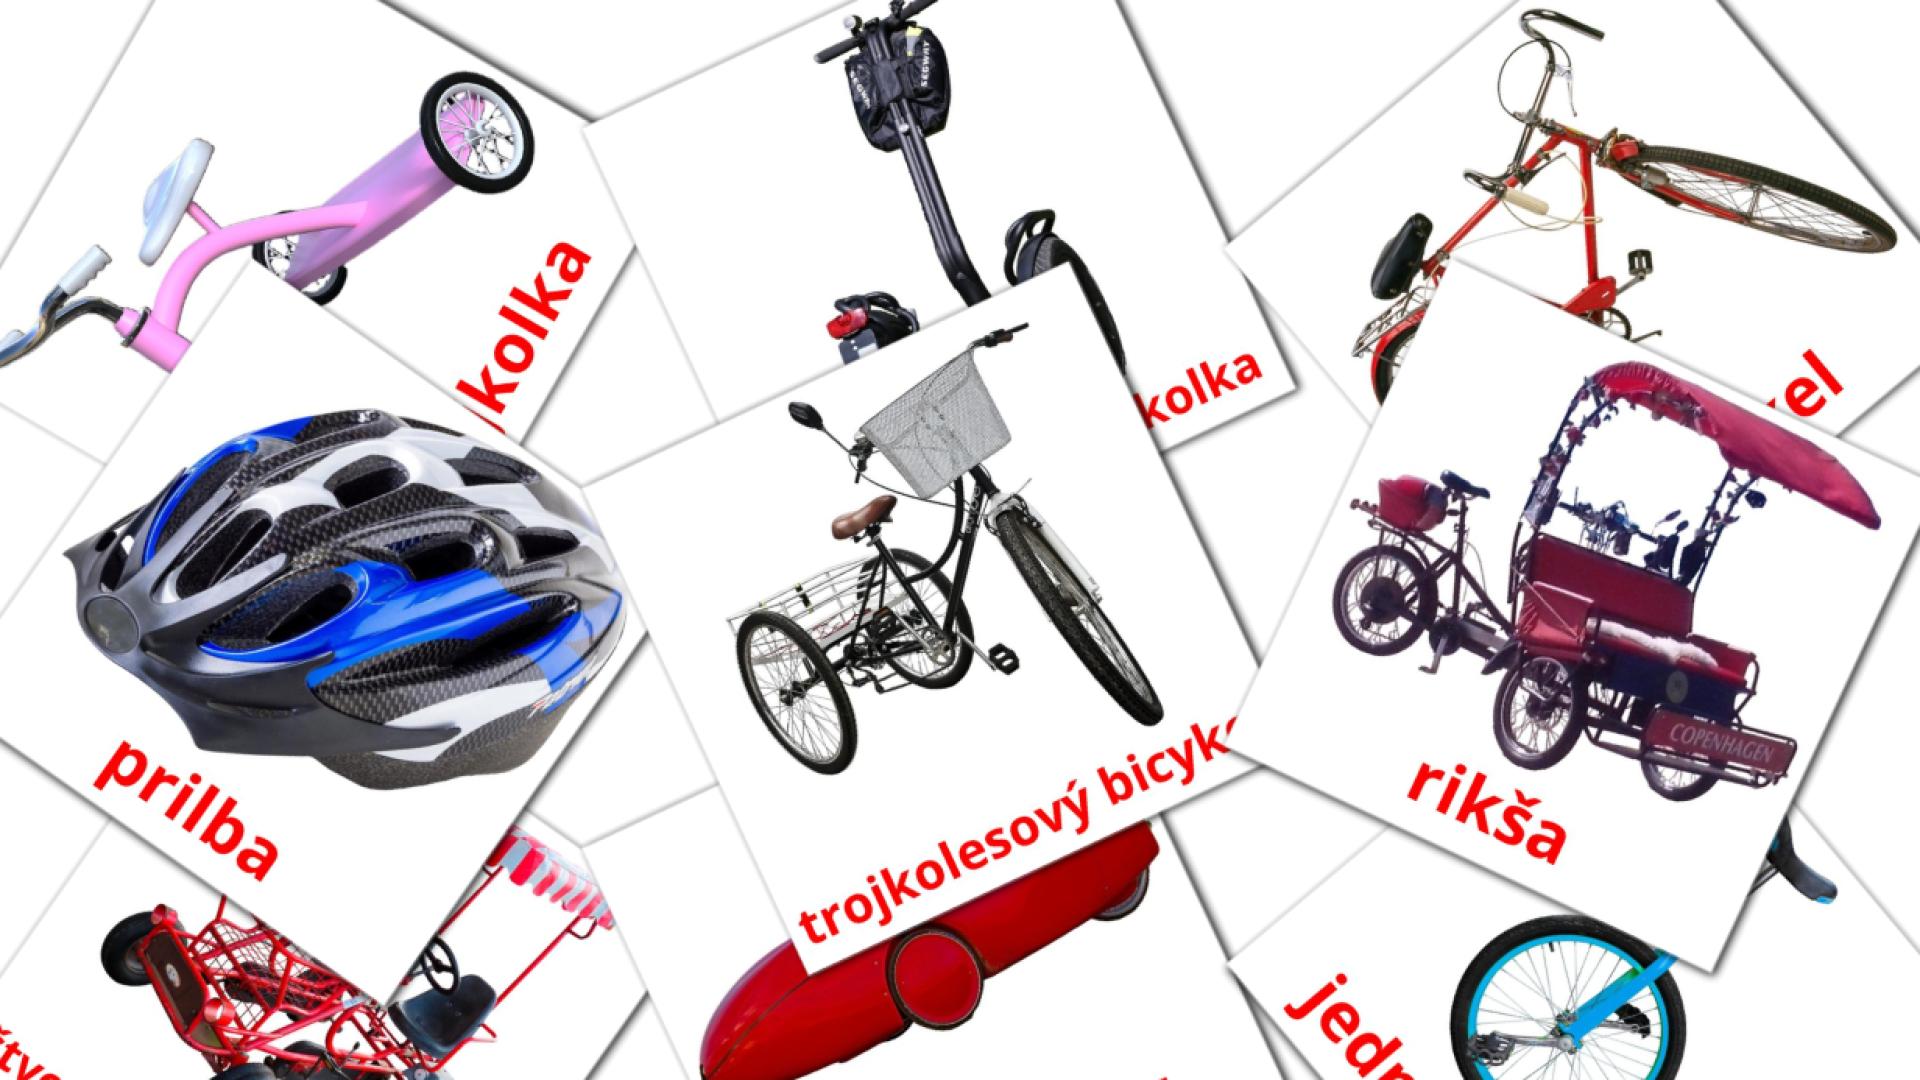 16 Bildkarten für bicykle